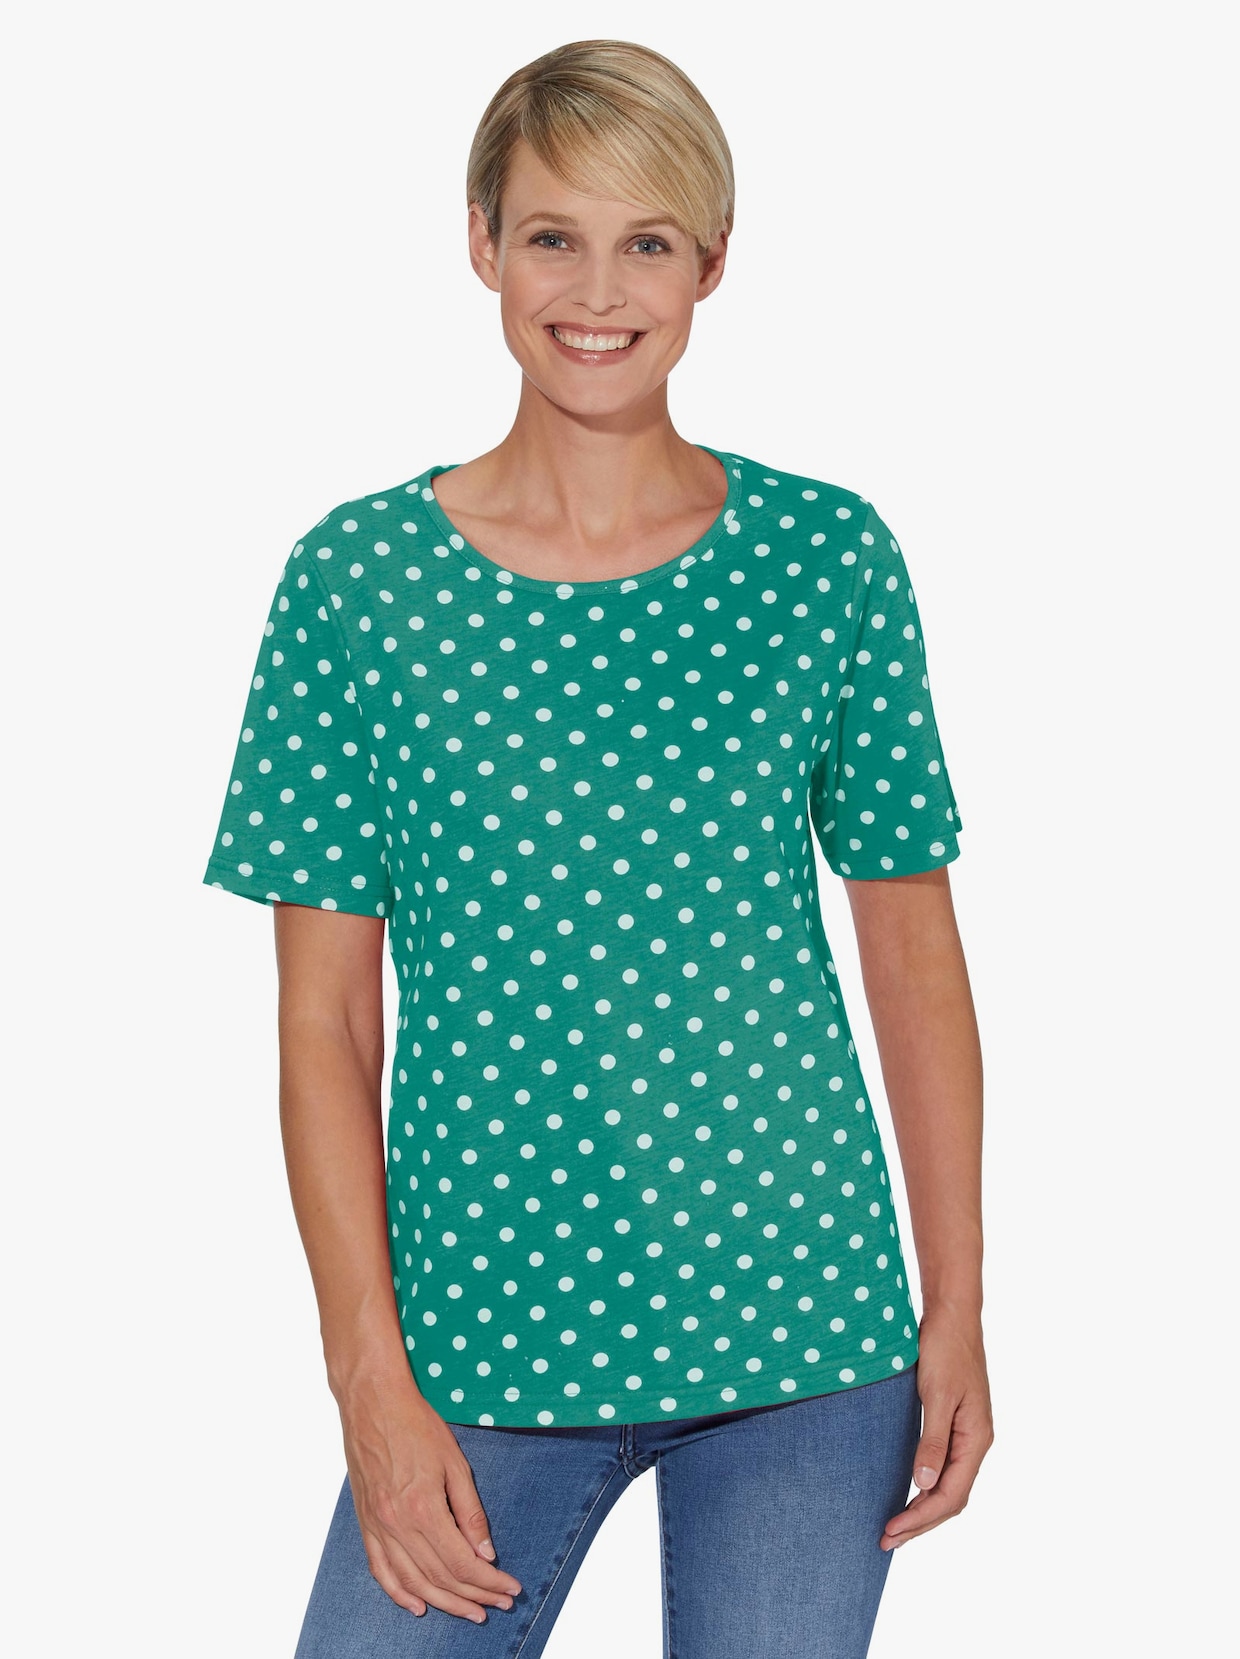 Tričko s okrúhlym výstrihom - smaragd + smaragd. bodky